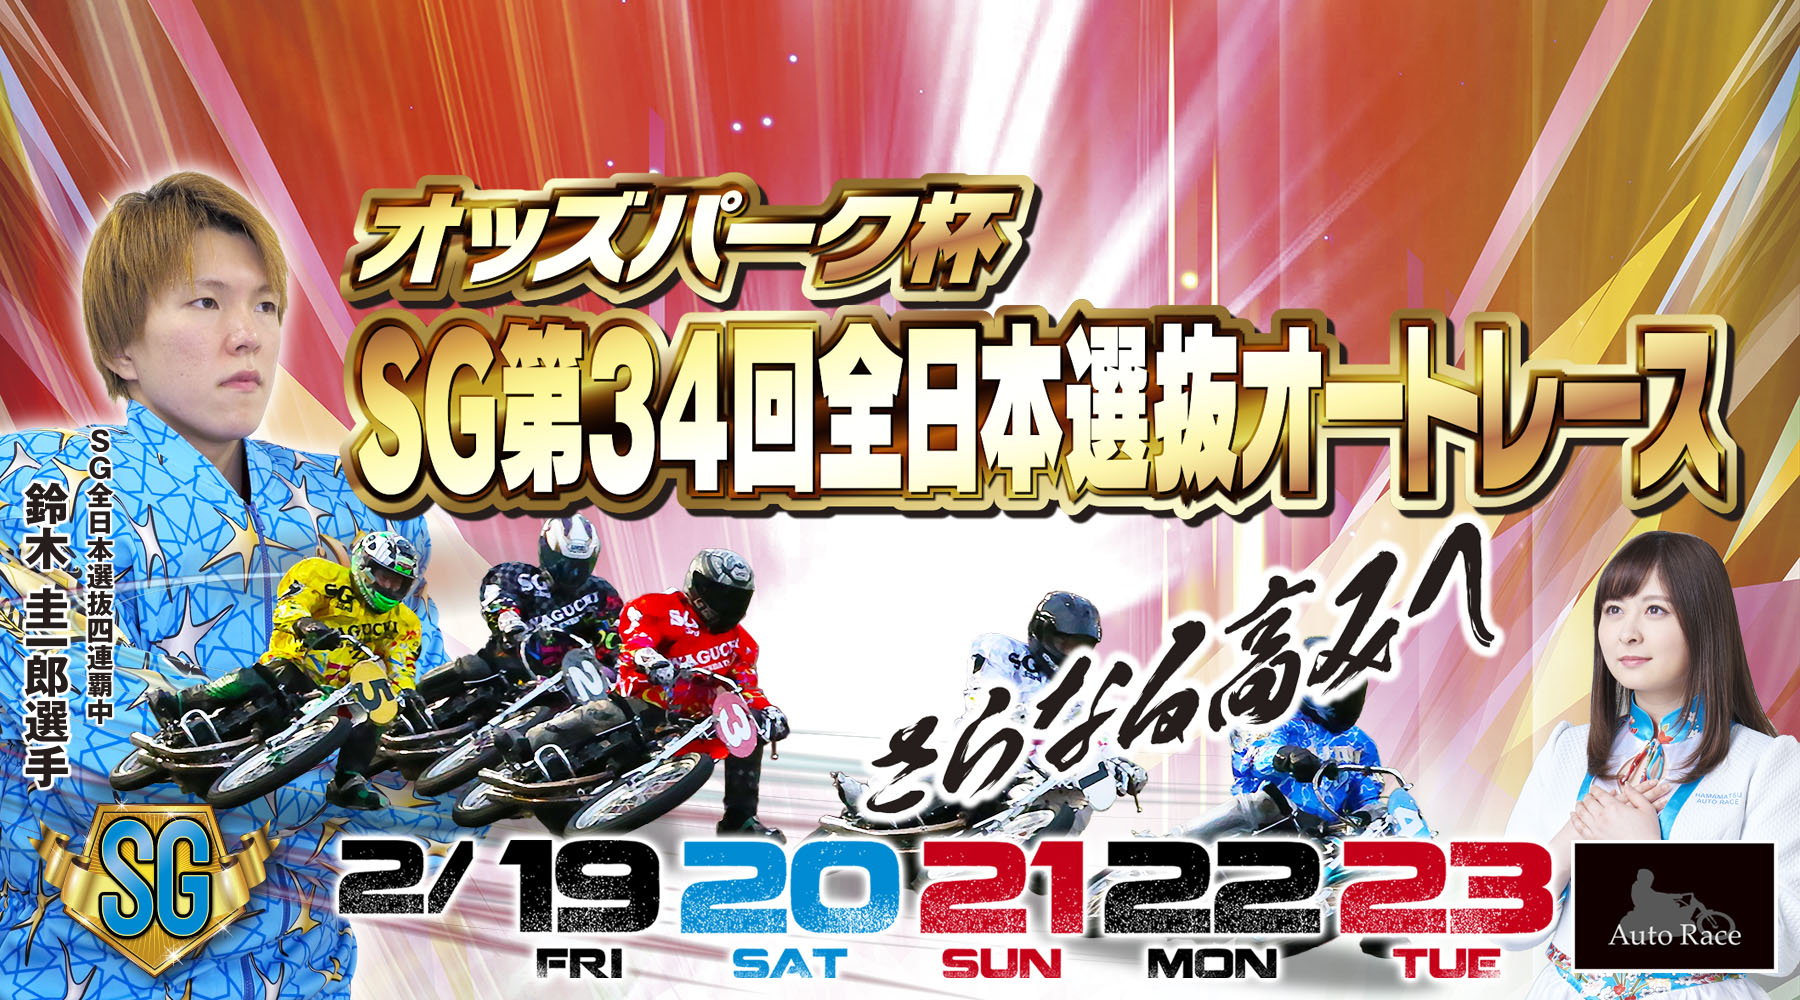 SG第34回全日本選抜オートレース